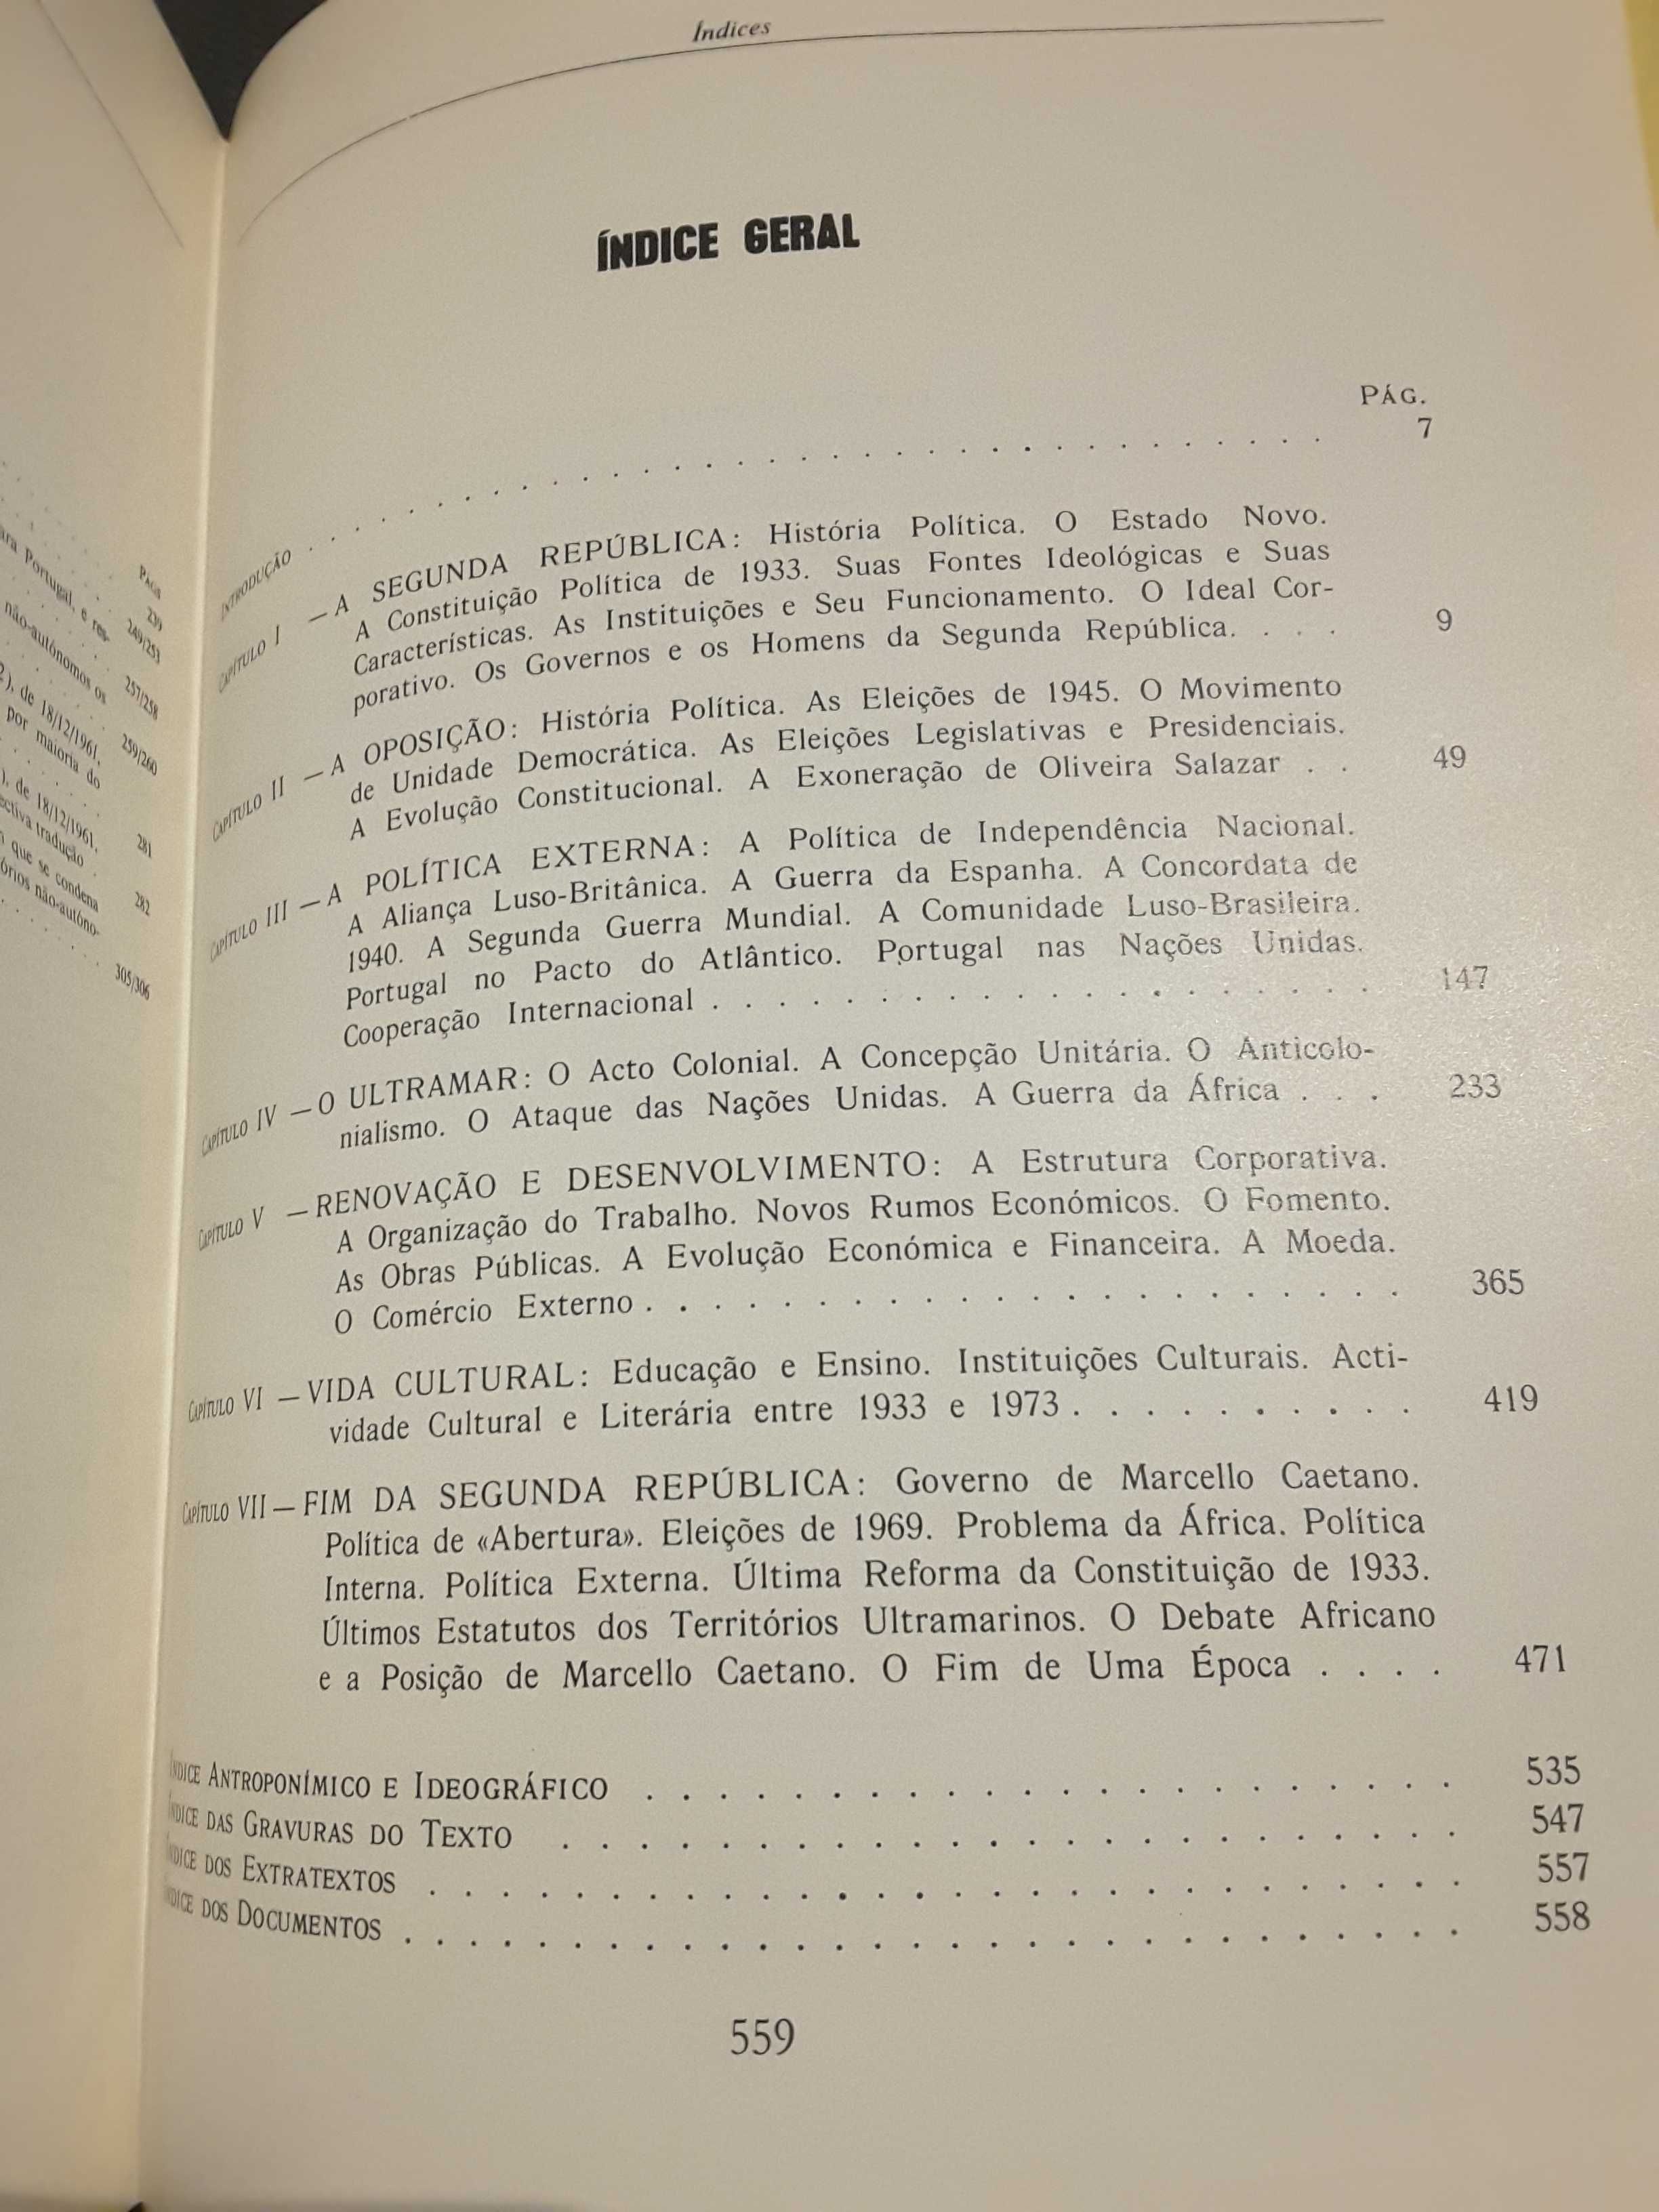 Estudos Corporativos (1953/1954)/ Franco Nogueira - O Estado Novo